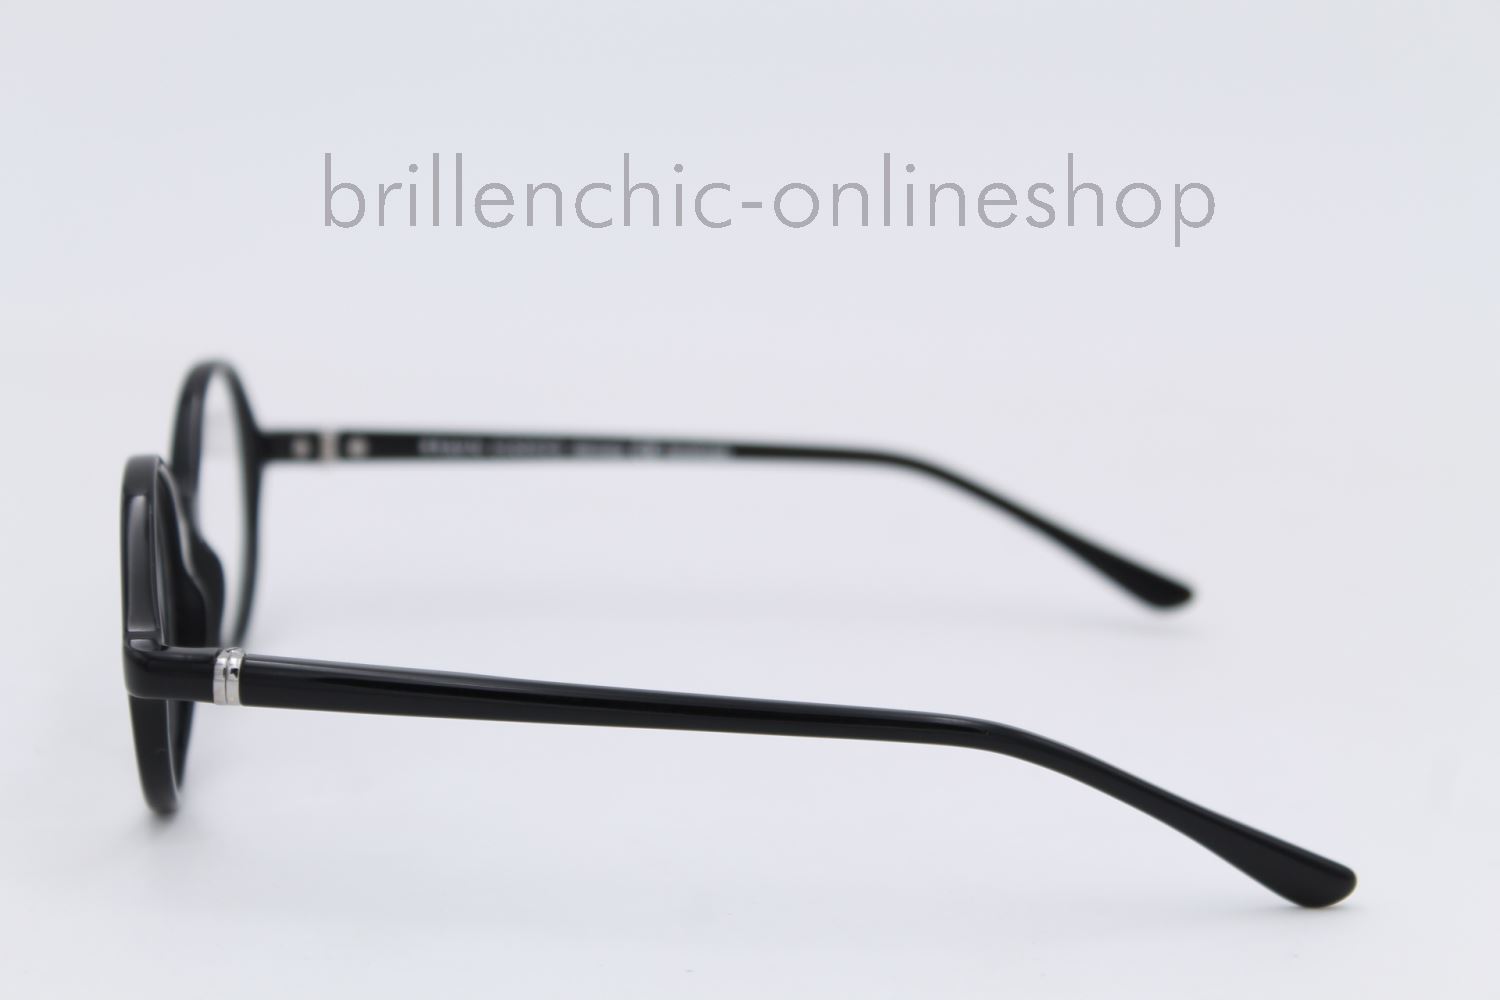 Brillenchic Onlineshop Berlin Ihr Starker Partner Fur Exklusive Brillen Online Kaufen Braun Classics Mod 54 4 Exklusiv Im Brillenchic Onlineshop